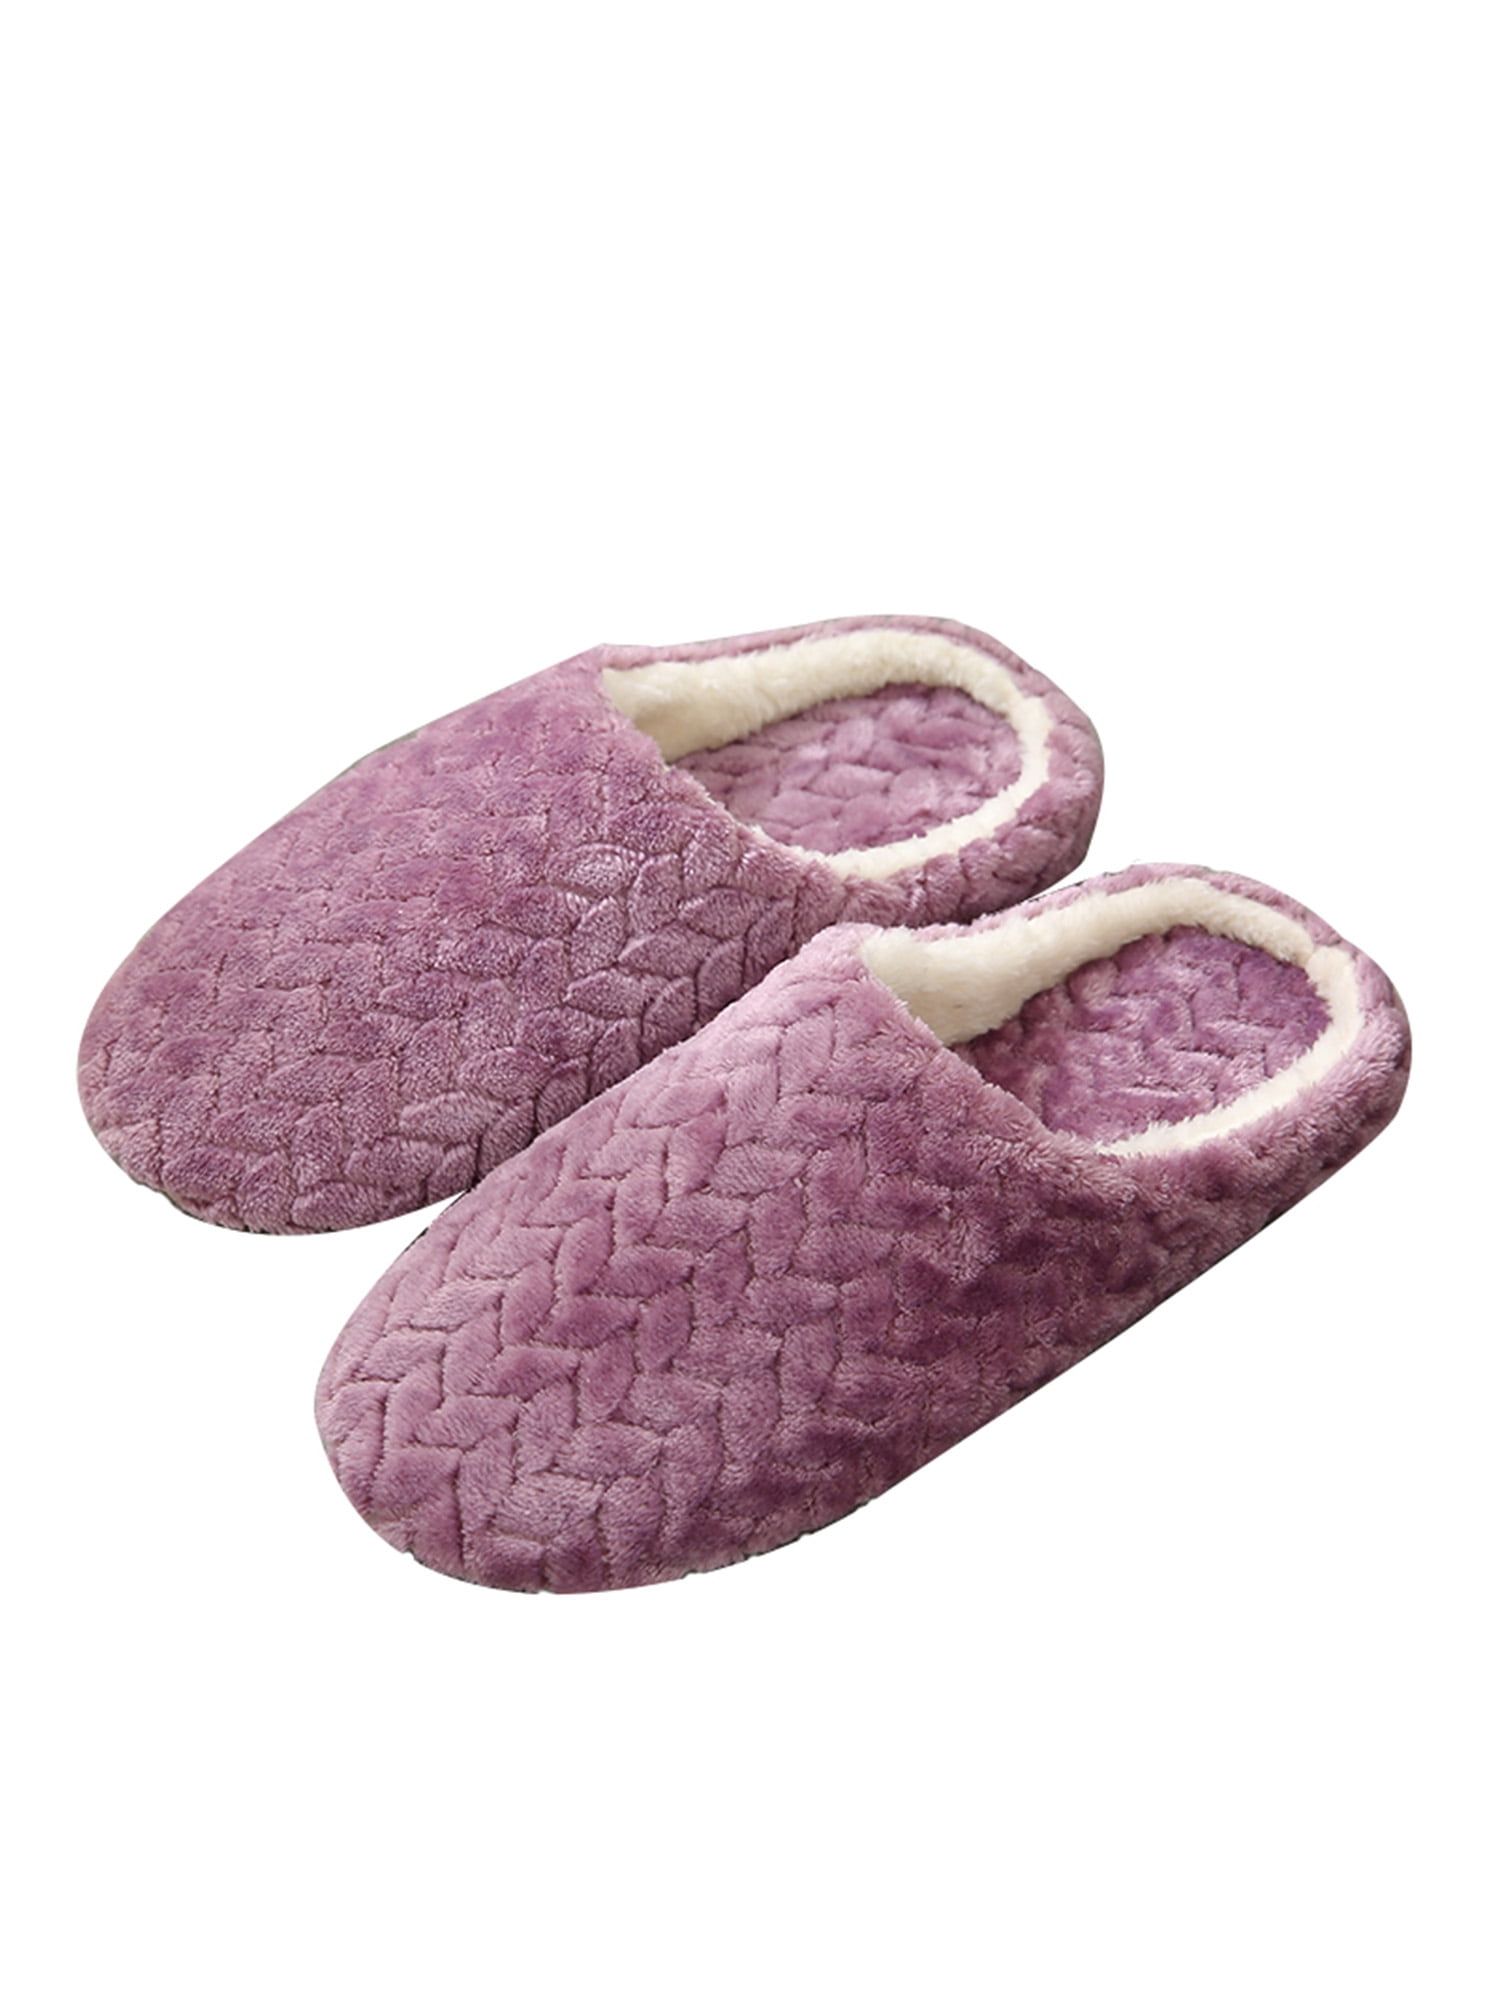 Details about   Women's Fuzzy Lightweight Memory Foam Slippers Warm Fleece House Shoes